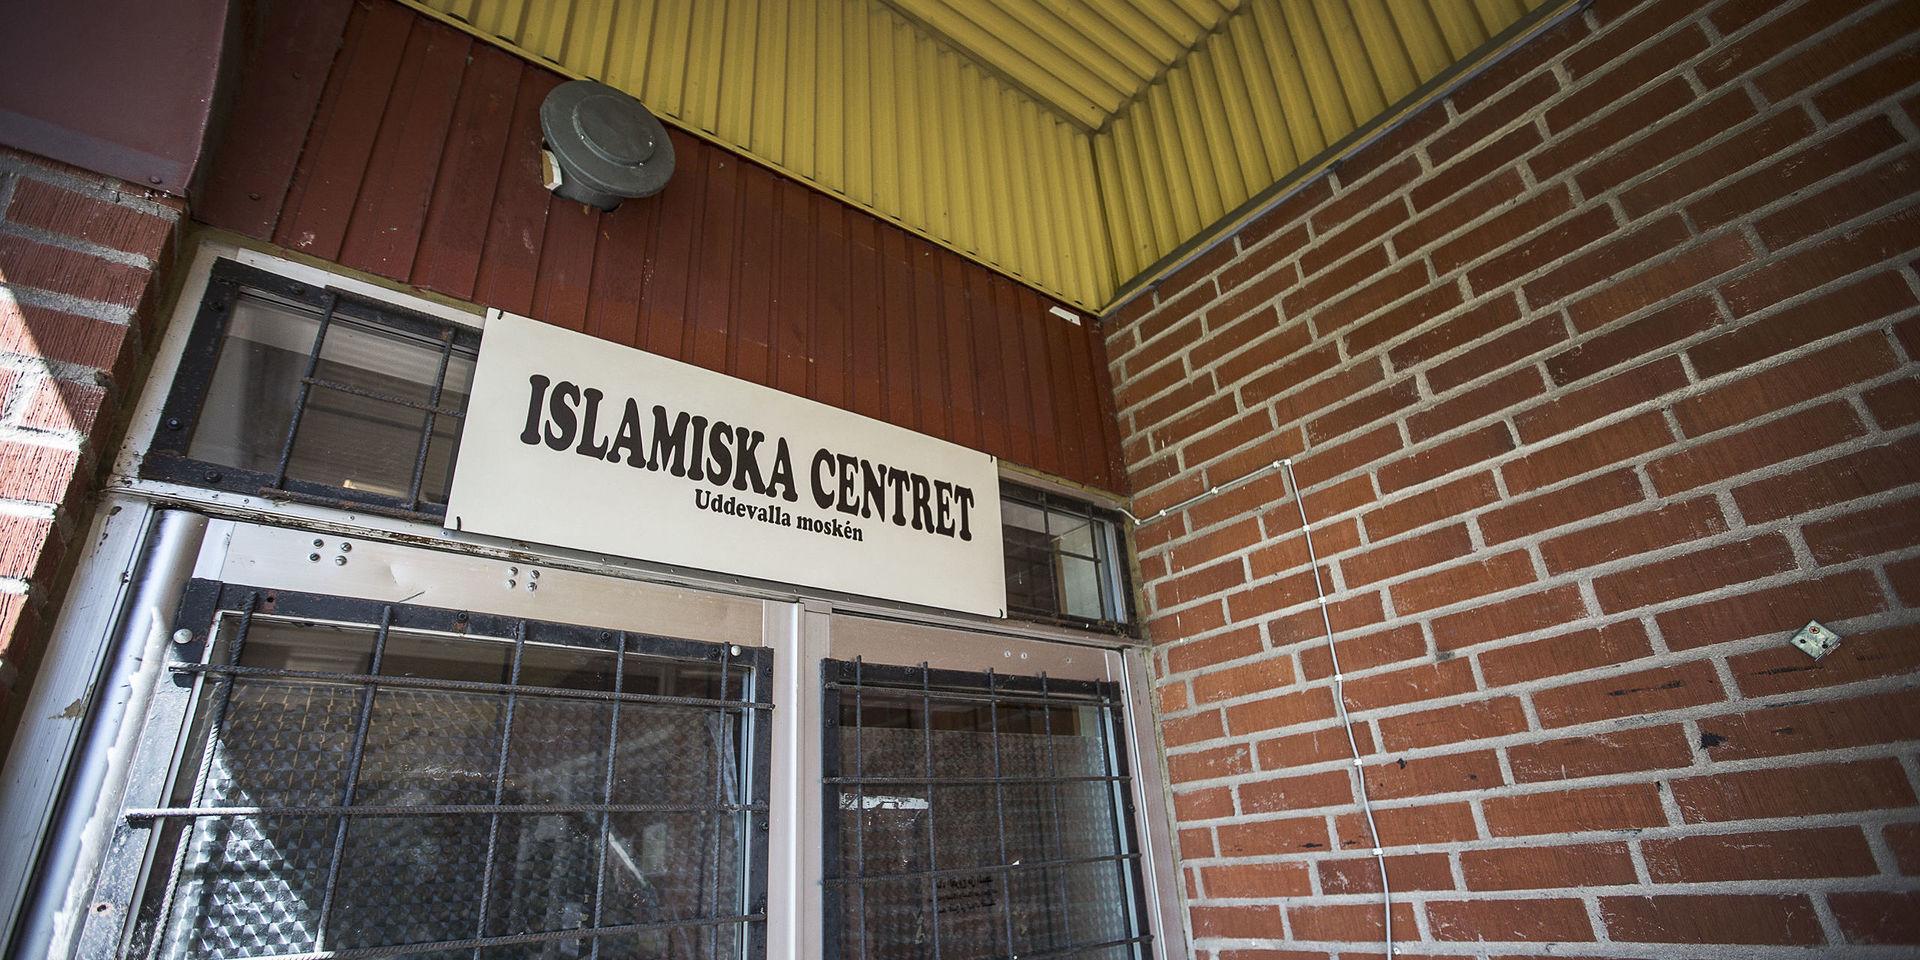 Ingången till Uddevallamoskén, Islamiska centret